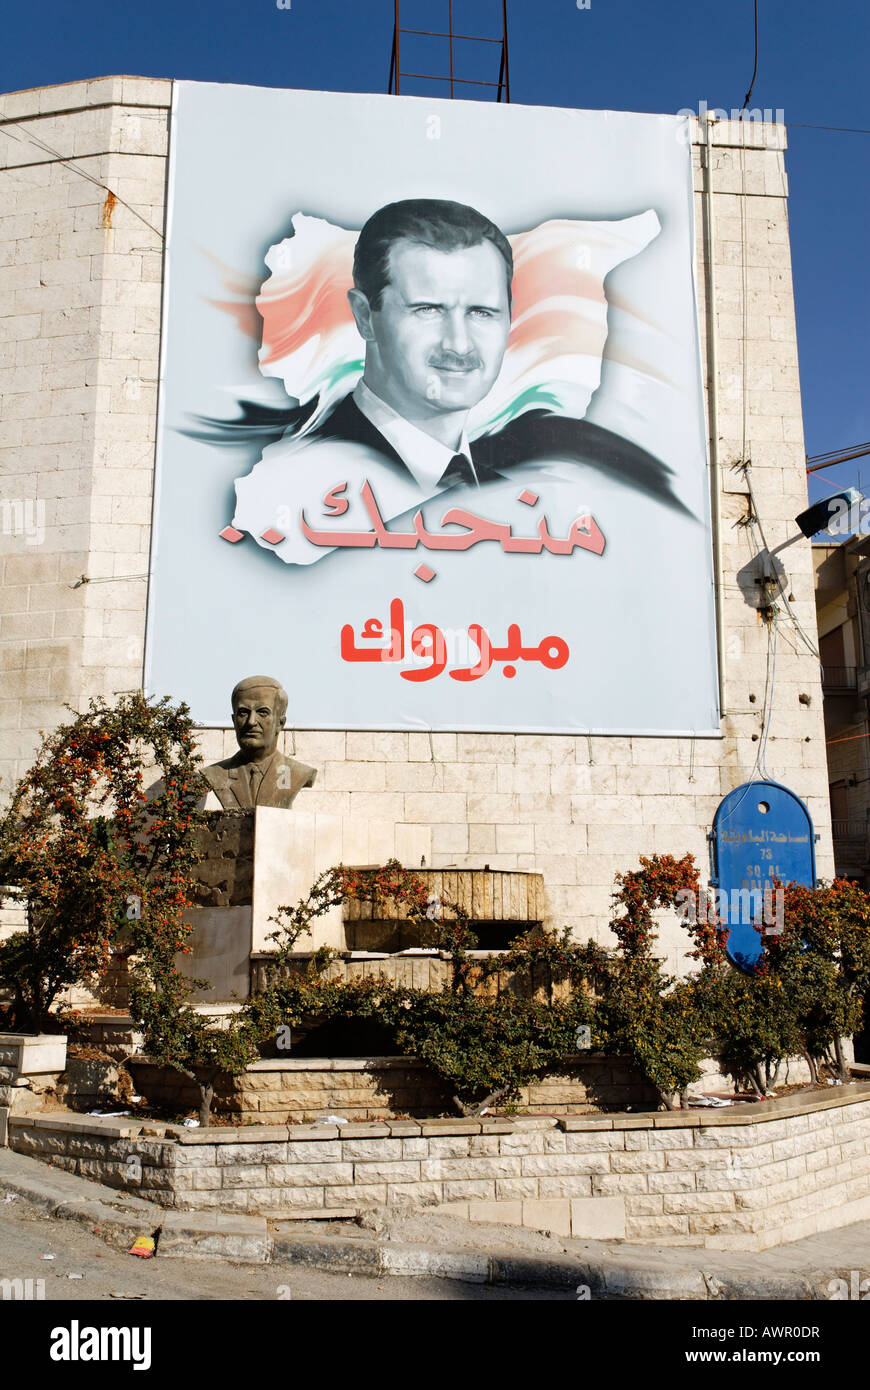 Culto della personalità intorno al presidente siriano Bashar al-Assad, Siria Foto Stock